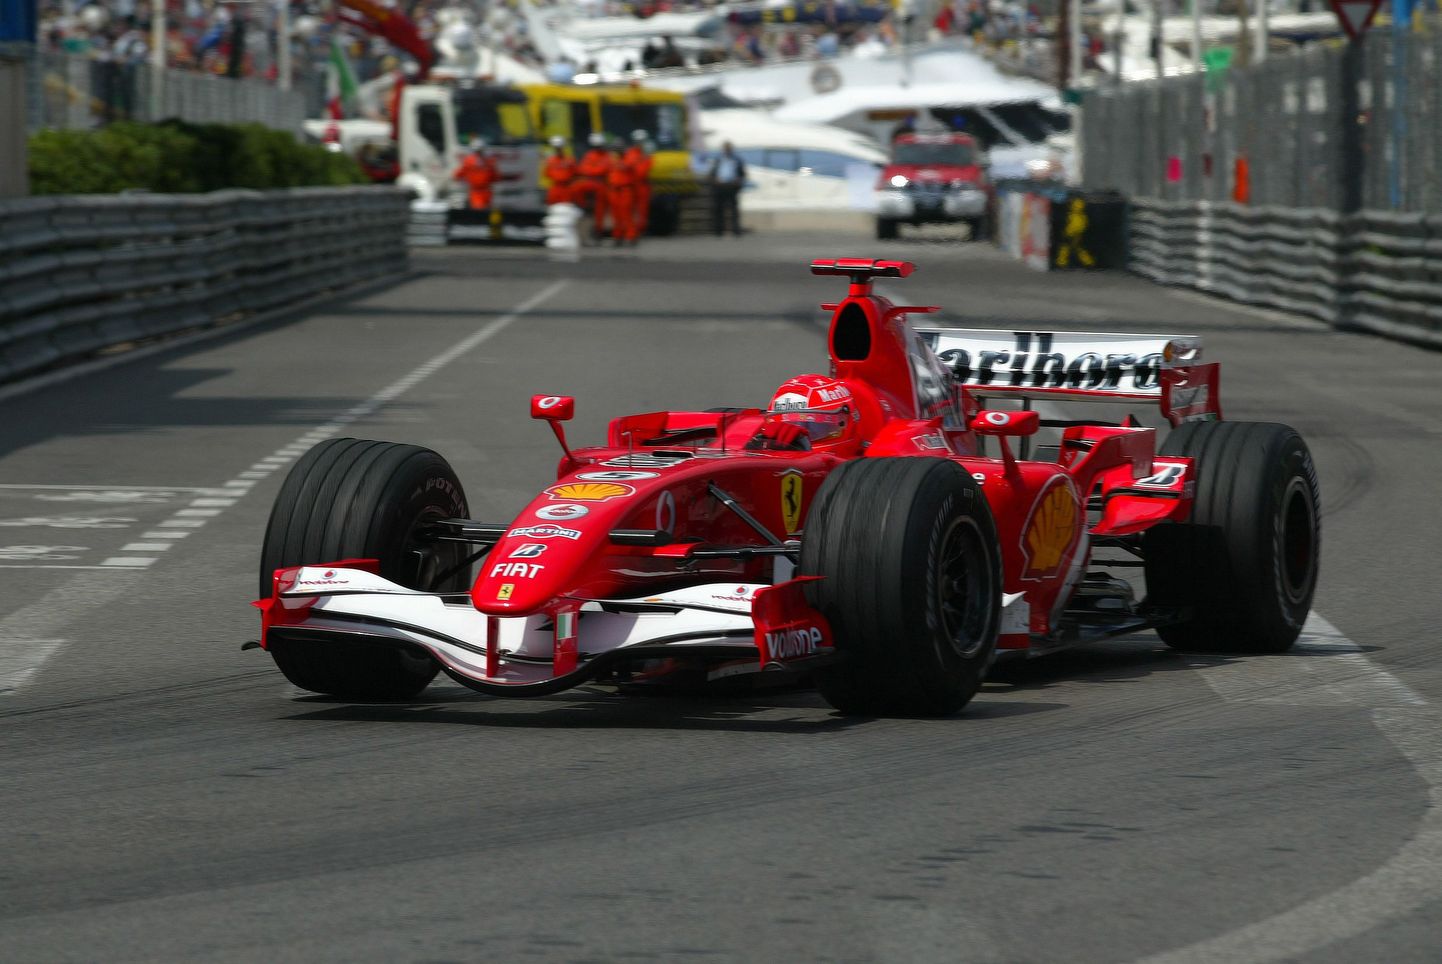 Michael Schumacher kihutamas 2006. aasta Monaco etapil Ferrari roolis.